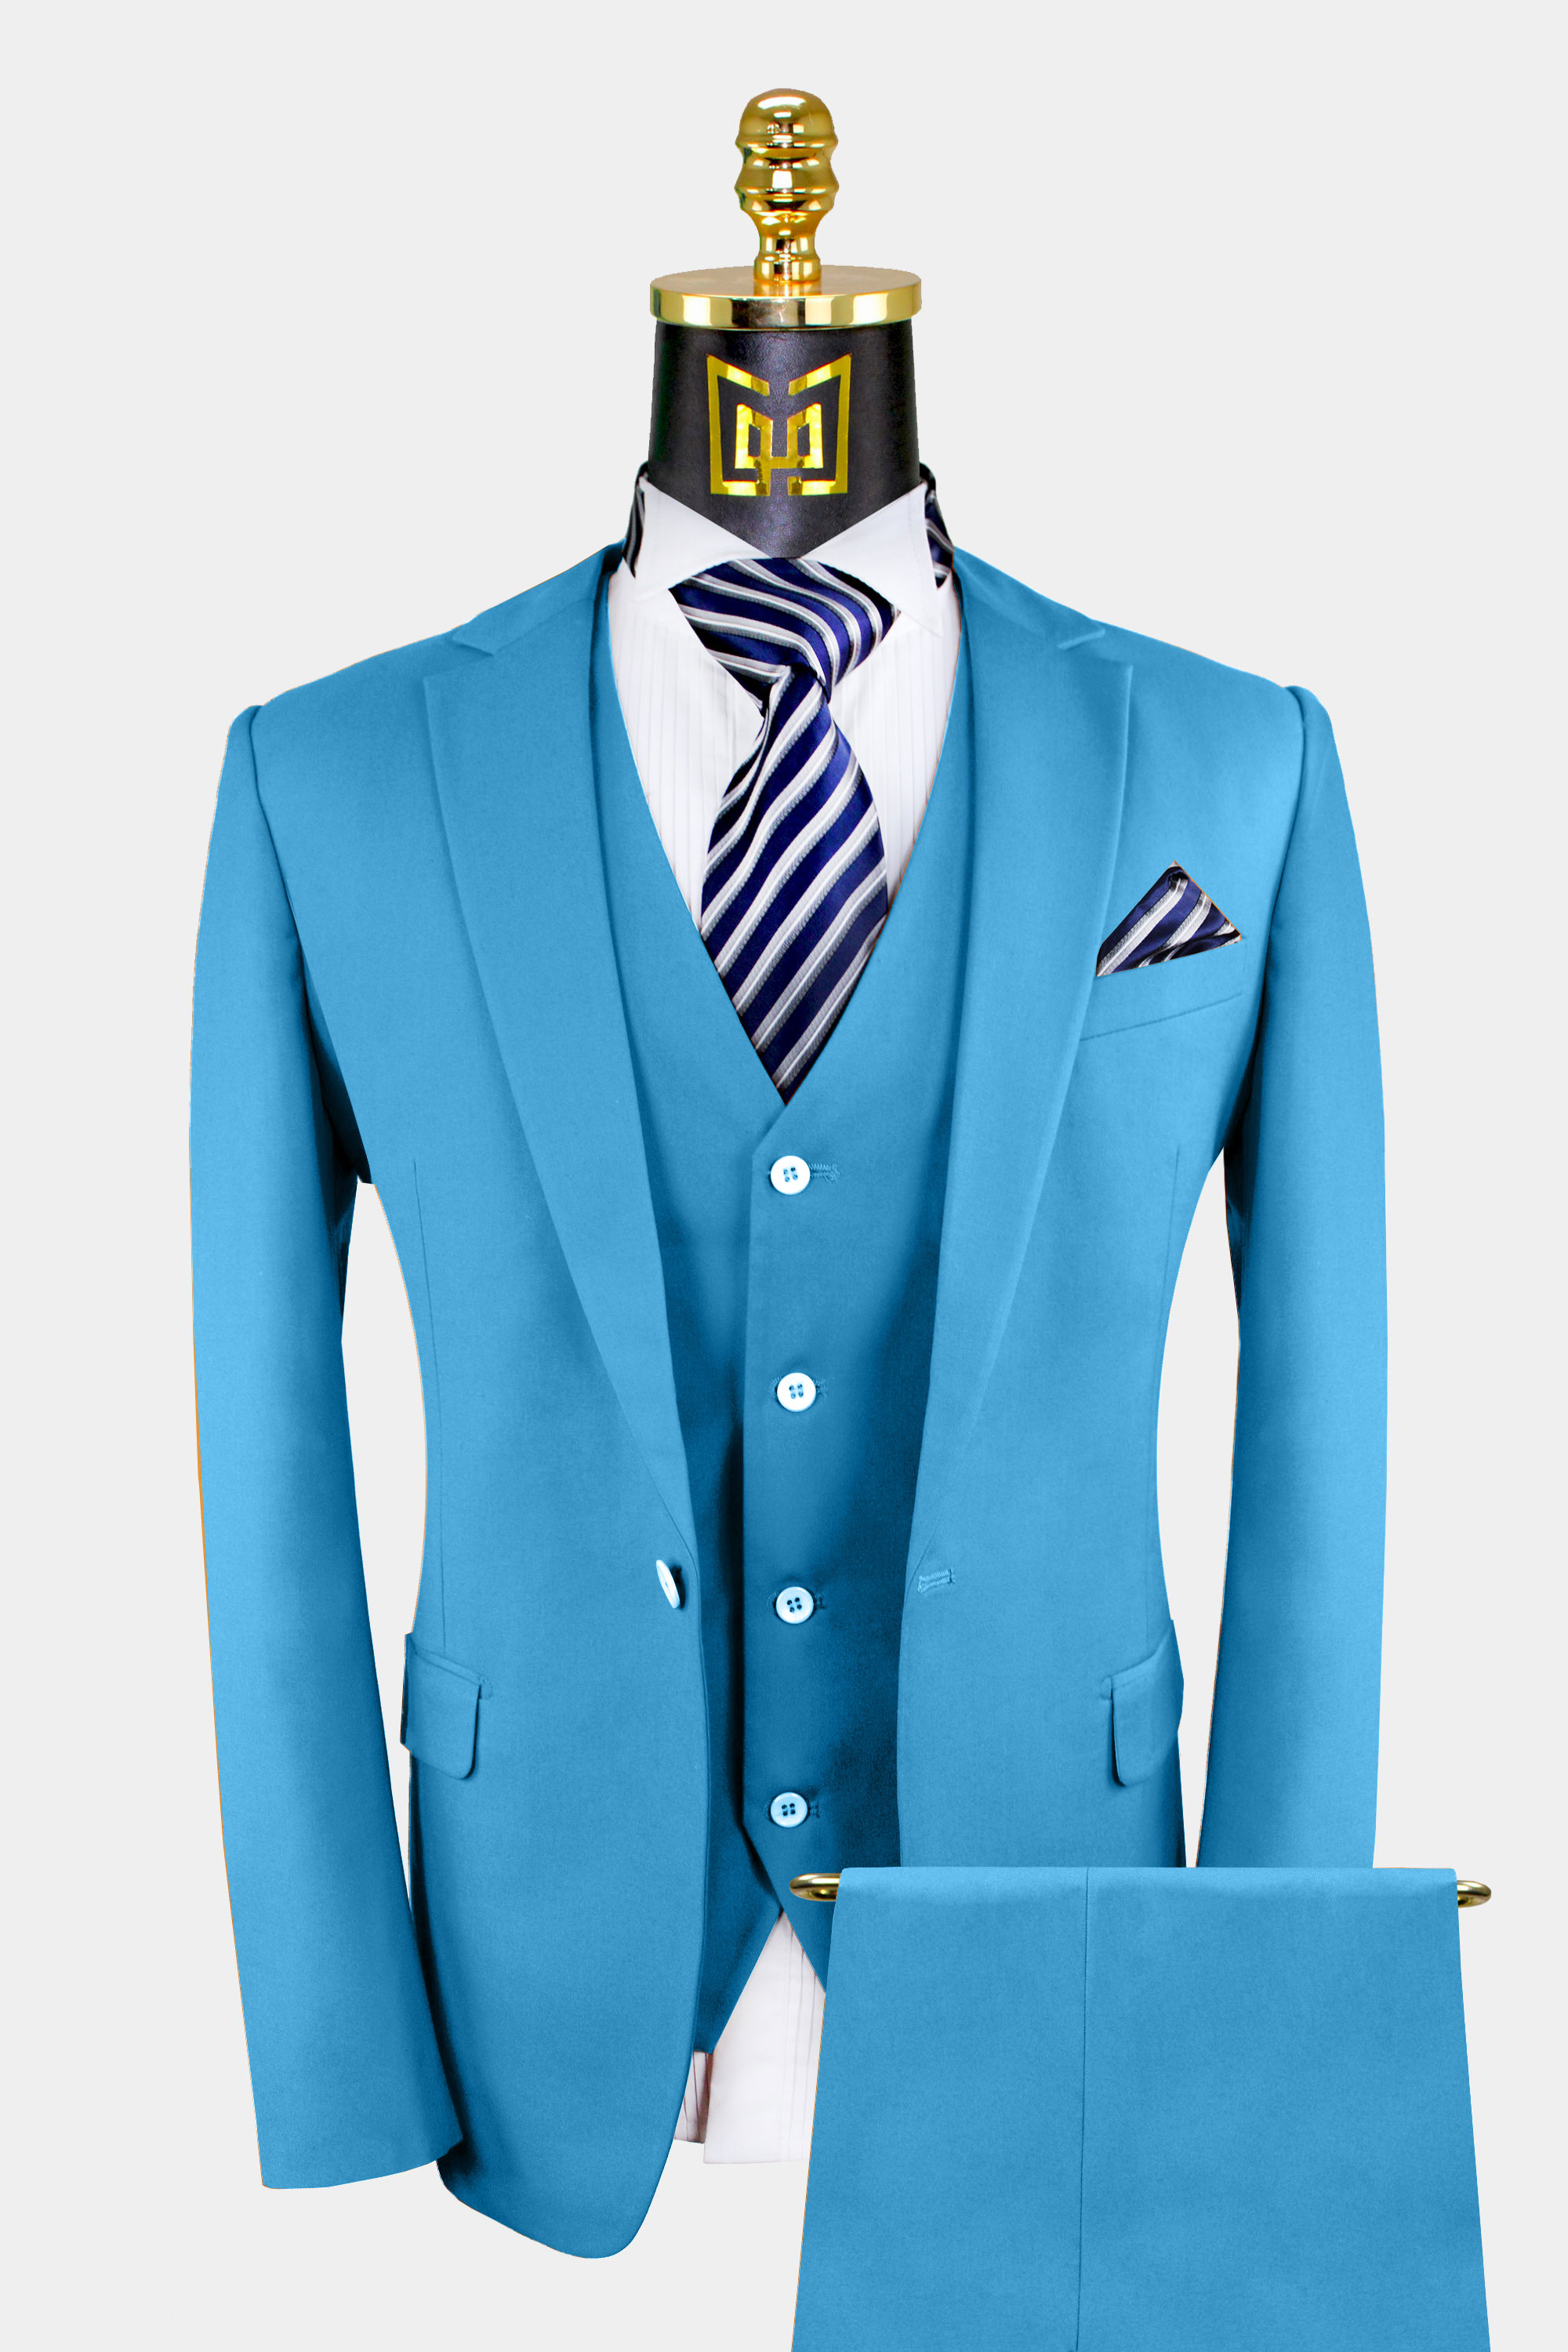 Men's Light Blue Suit - 3 Piece